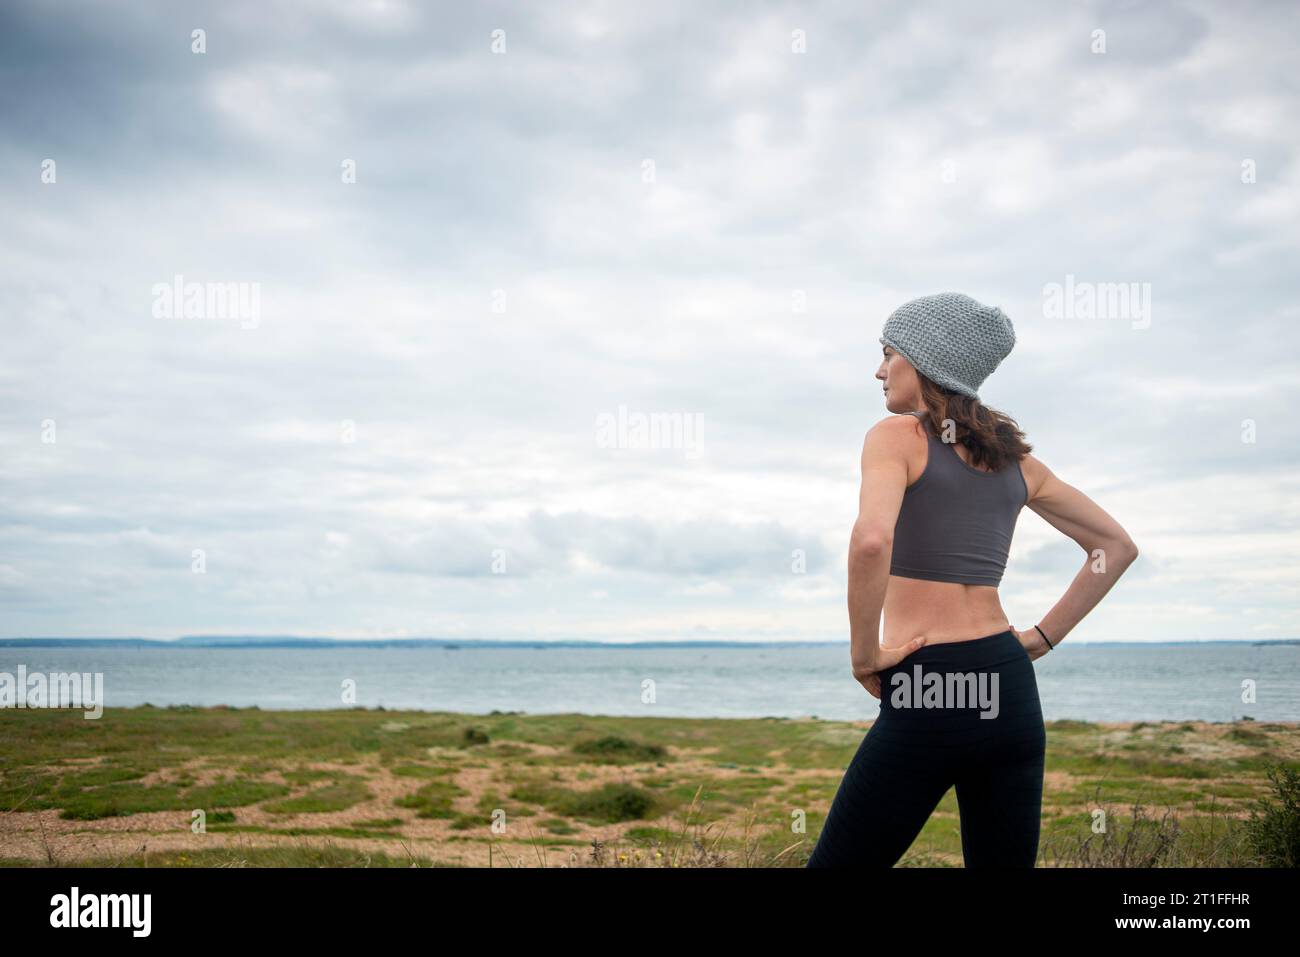 Mujer deportiva descansando después de correr y hacer ejercicio afuera, mirando hacia el mar. Foto de stock